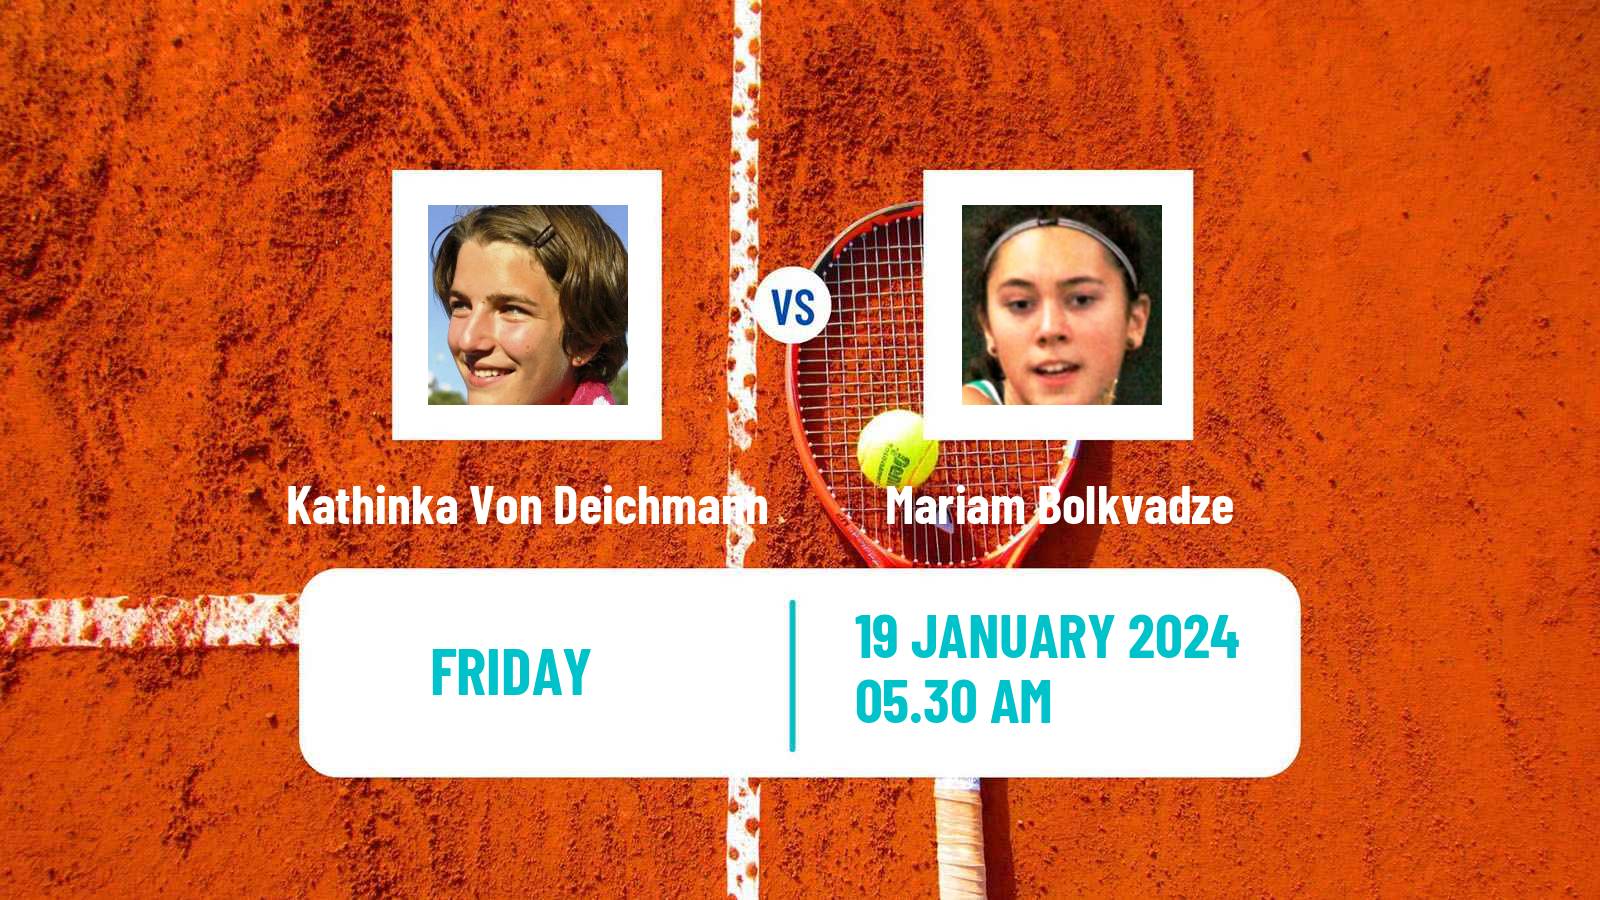 Tennis ITF W35 Sunderland Women Kathinka Von Deichmann - Mariam Bolkvadze